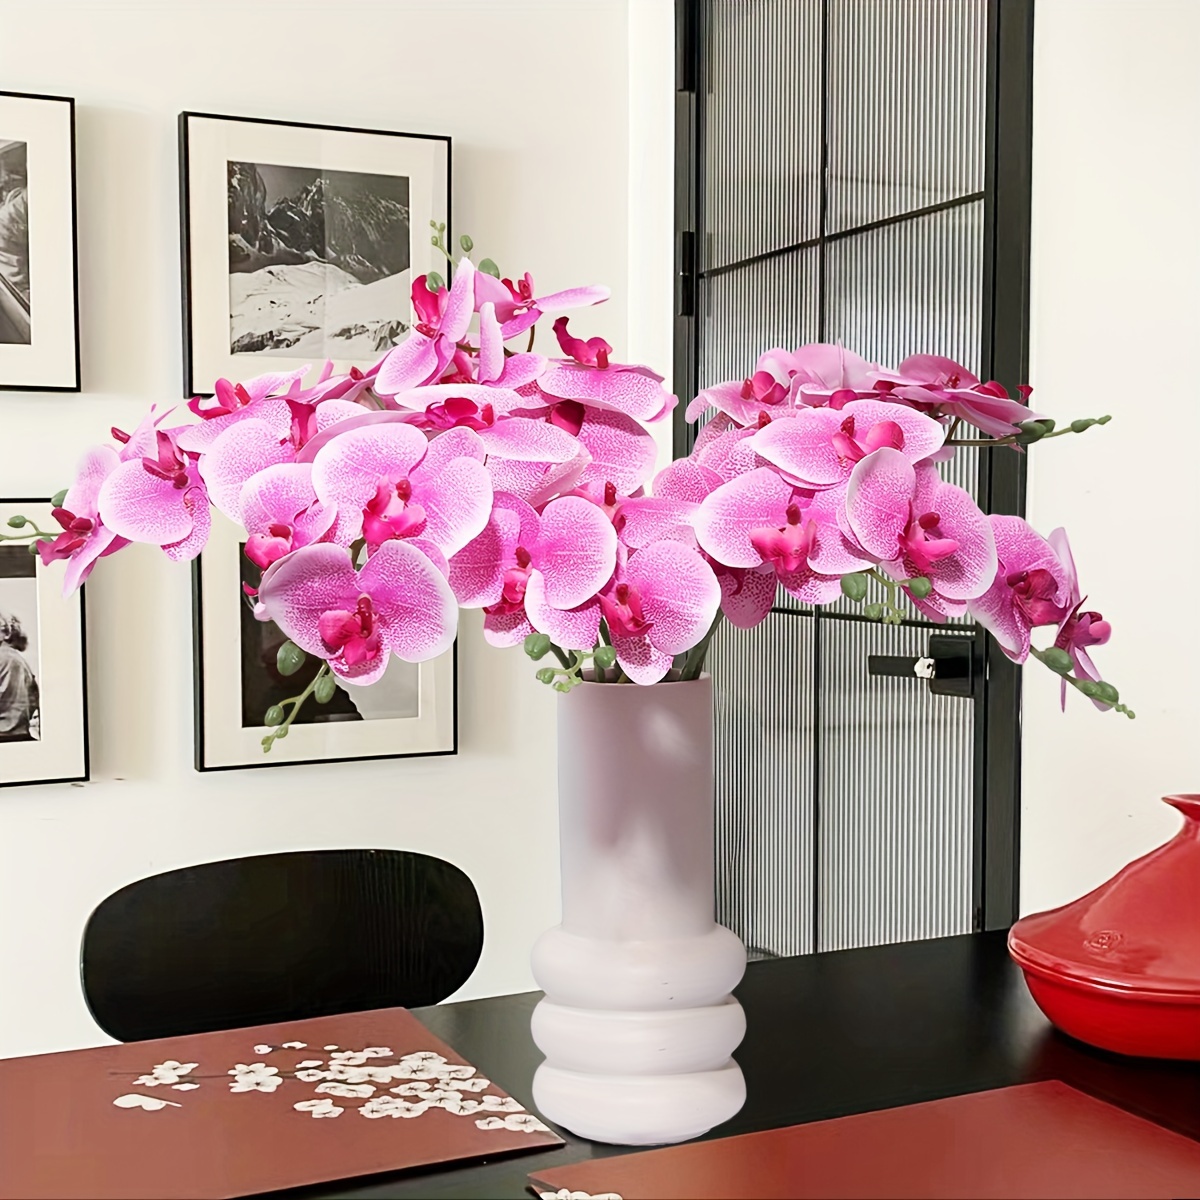 Comprar 6 piezas de tallos de orquídeas artificiales, flores de  Phalaenopsis, orquídeas de tacto real, tallos de flores artificiales,  flores de látex, orquídeas artificiales para decoración del hogar